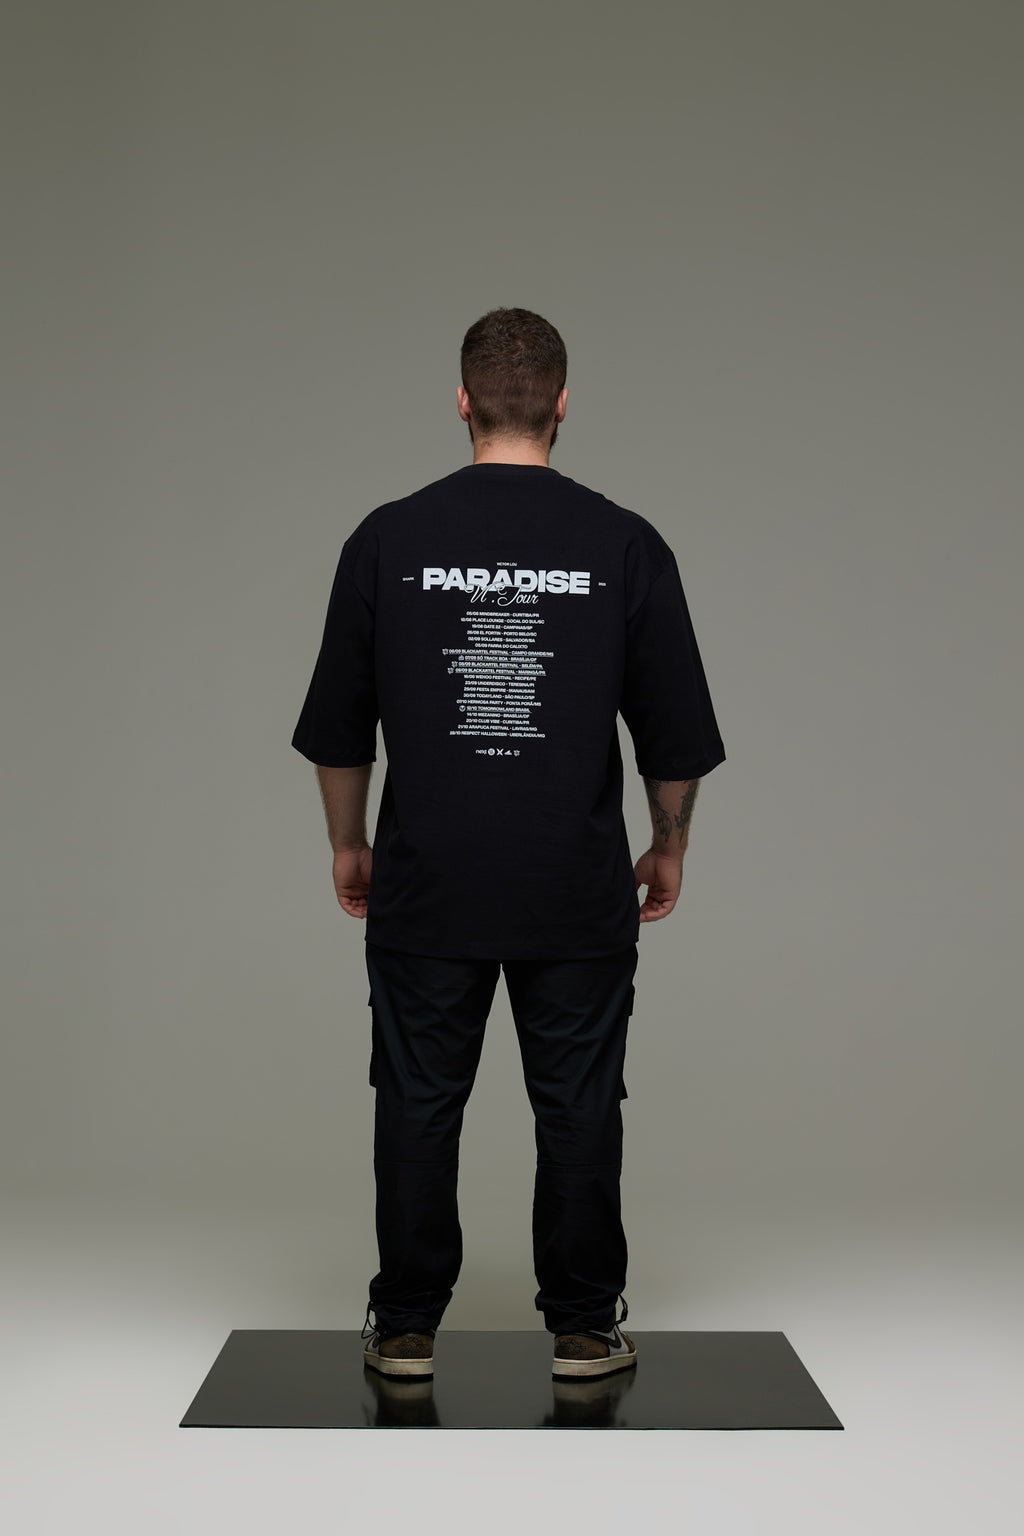 Paradise Tour (Camiseta)